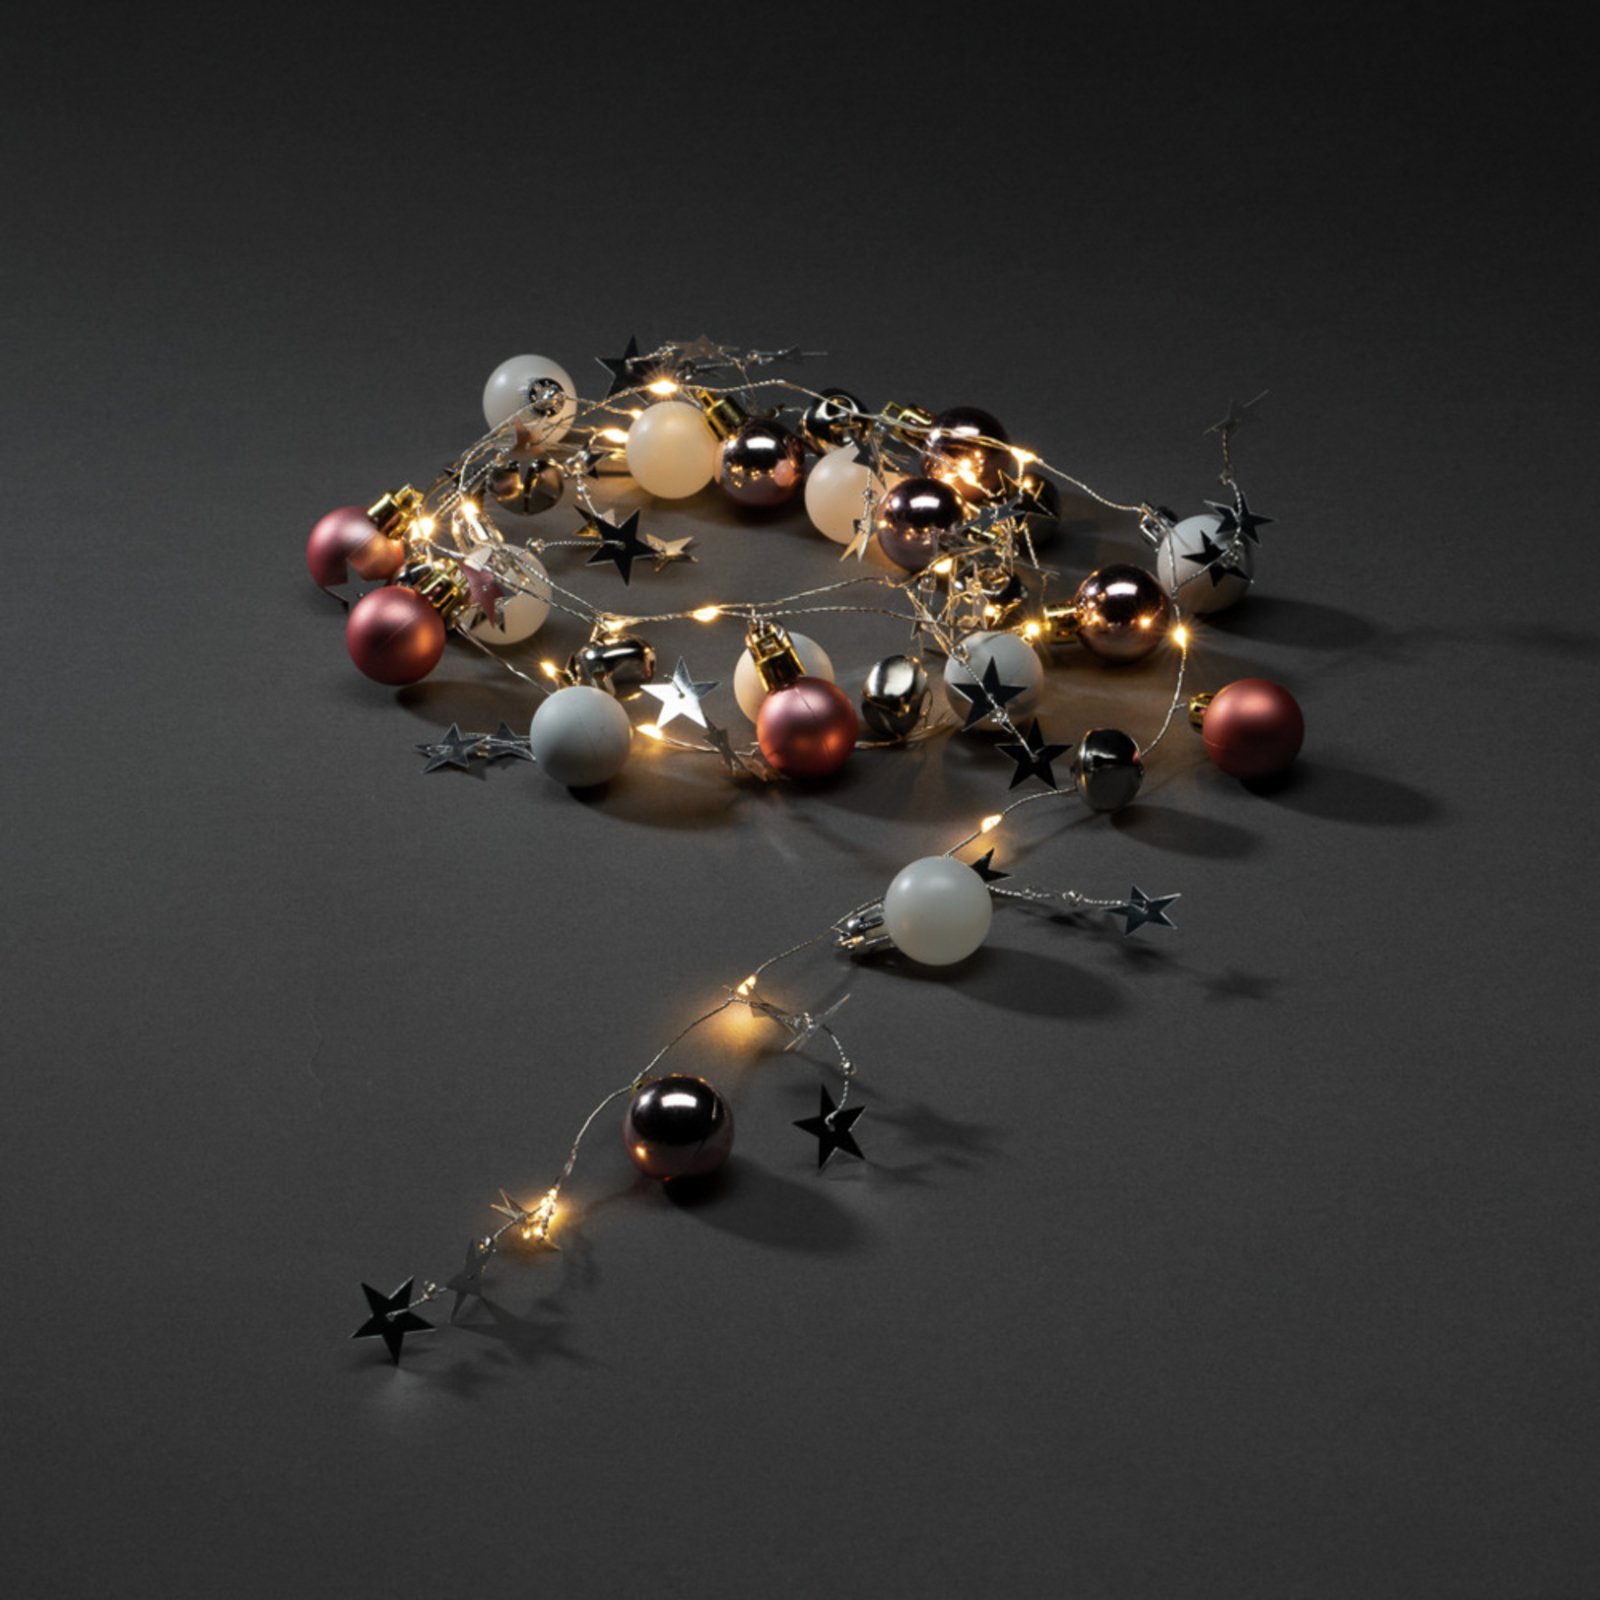 LED-lyslenke, fargerike perler, kuler og stjerner